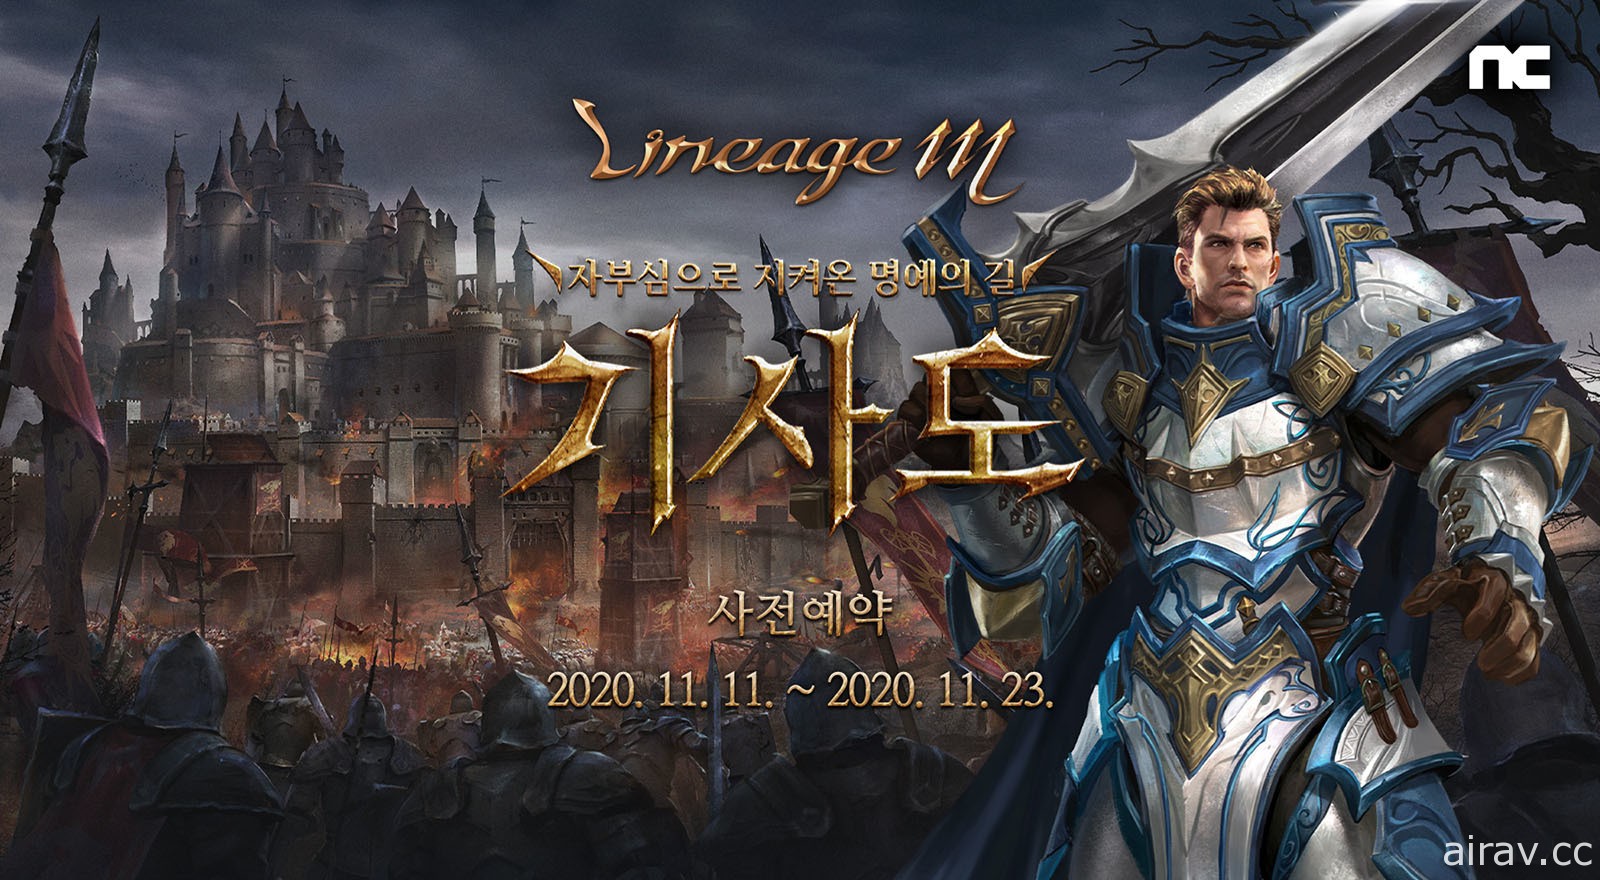 《天堂 M》韩版开放“骑士道”改版事前登录 预计 11 月 24 日实施更新